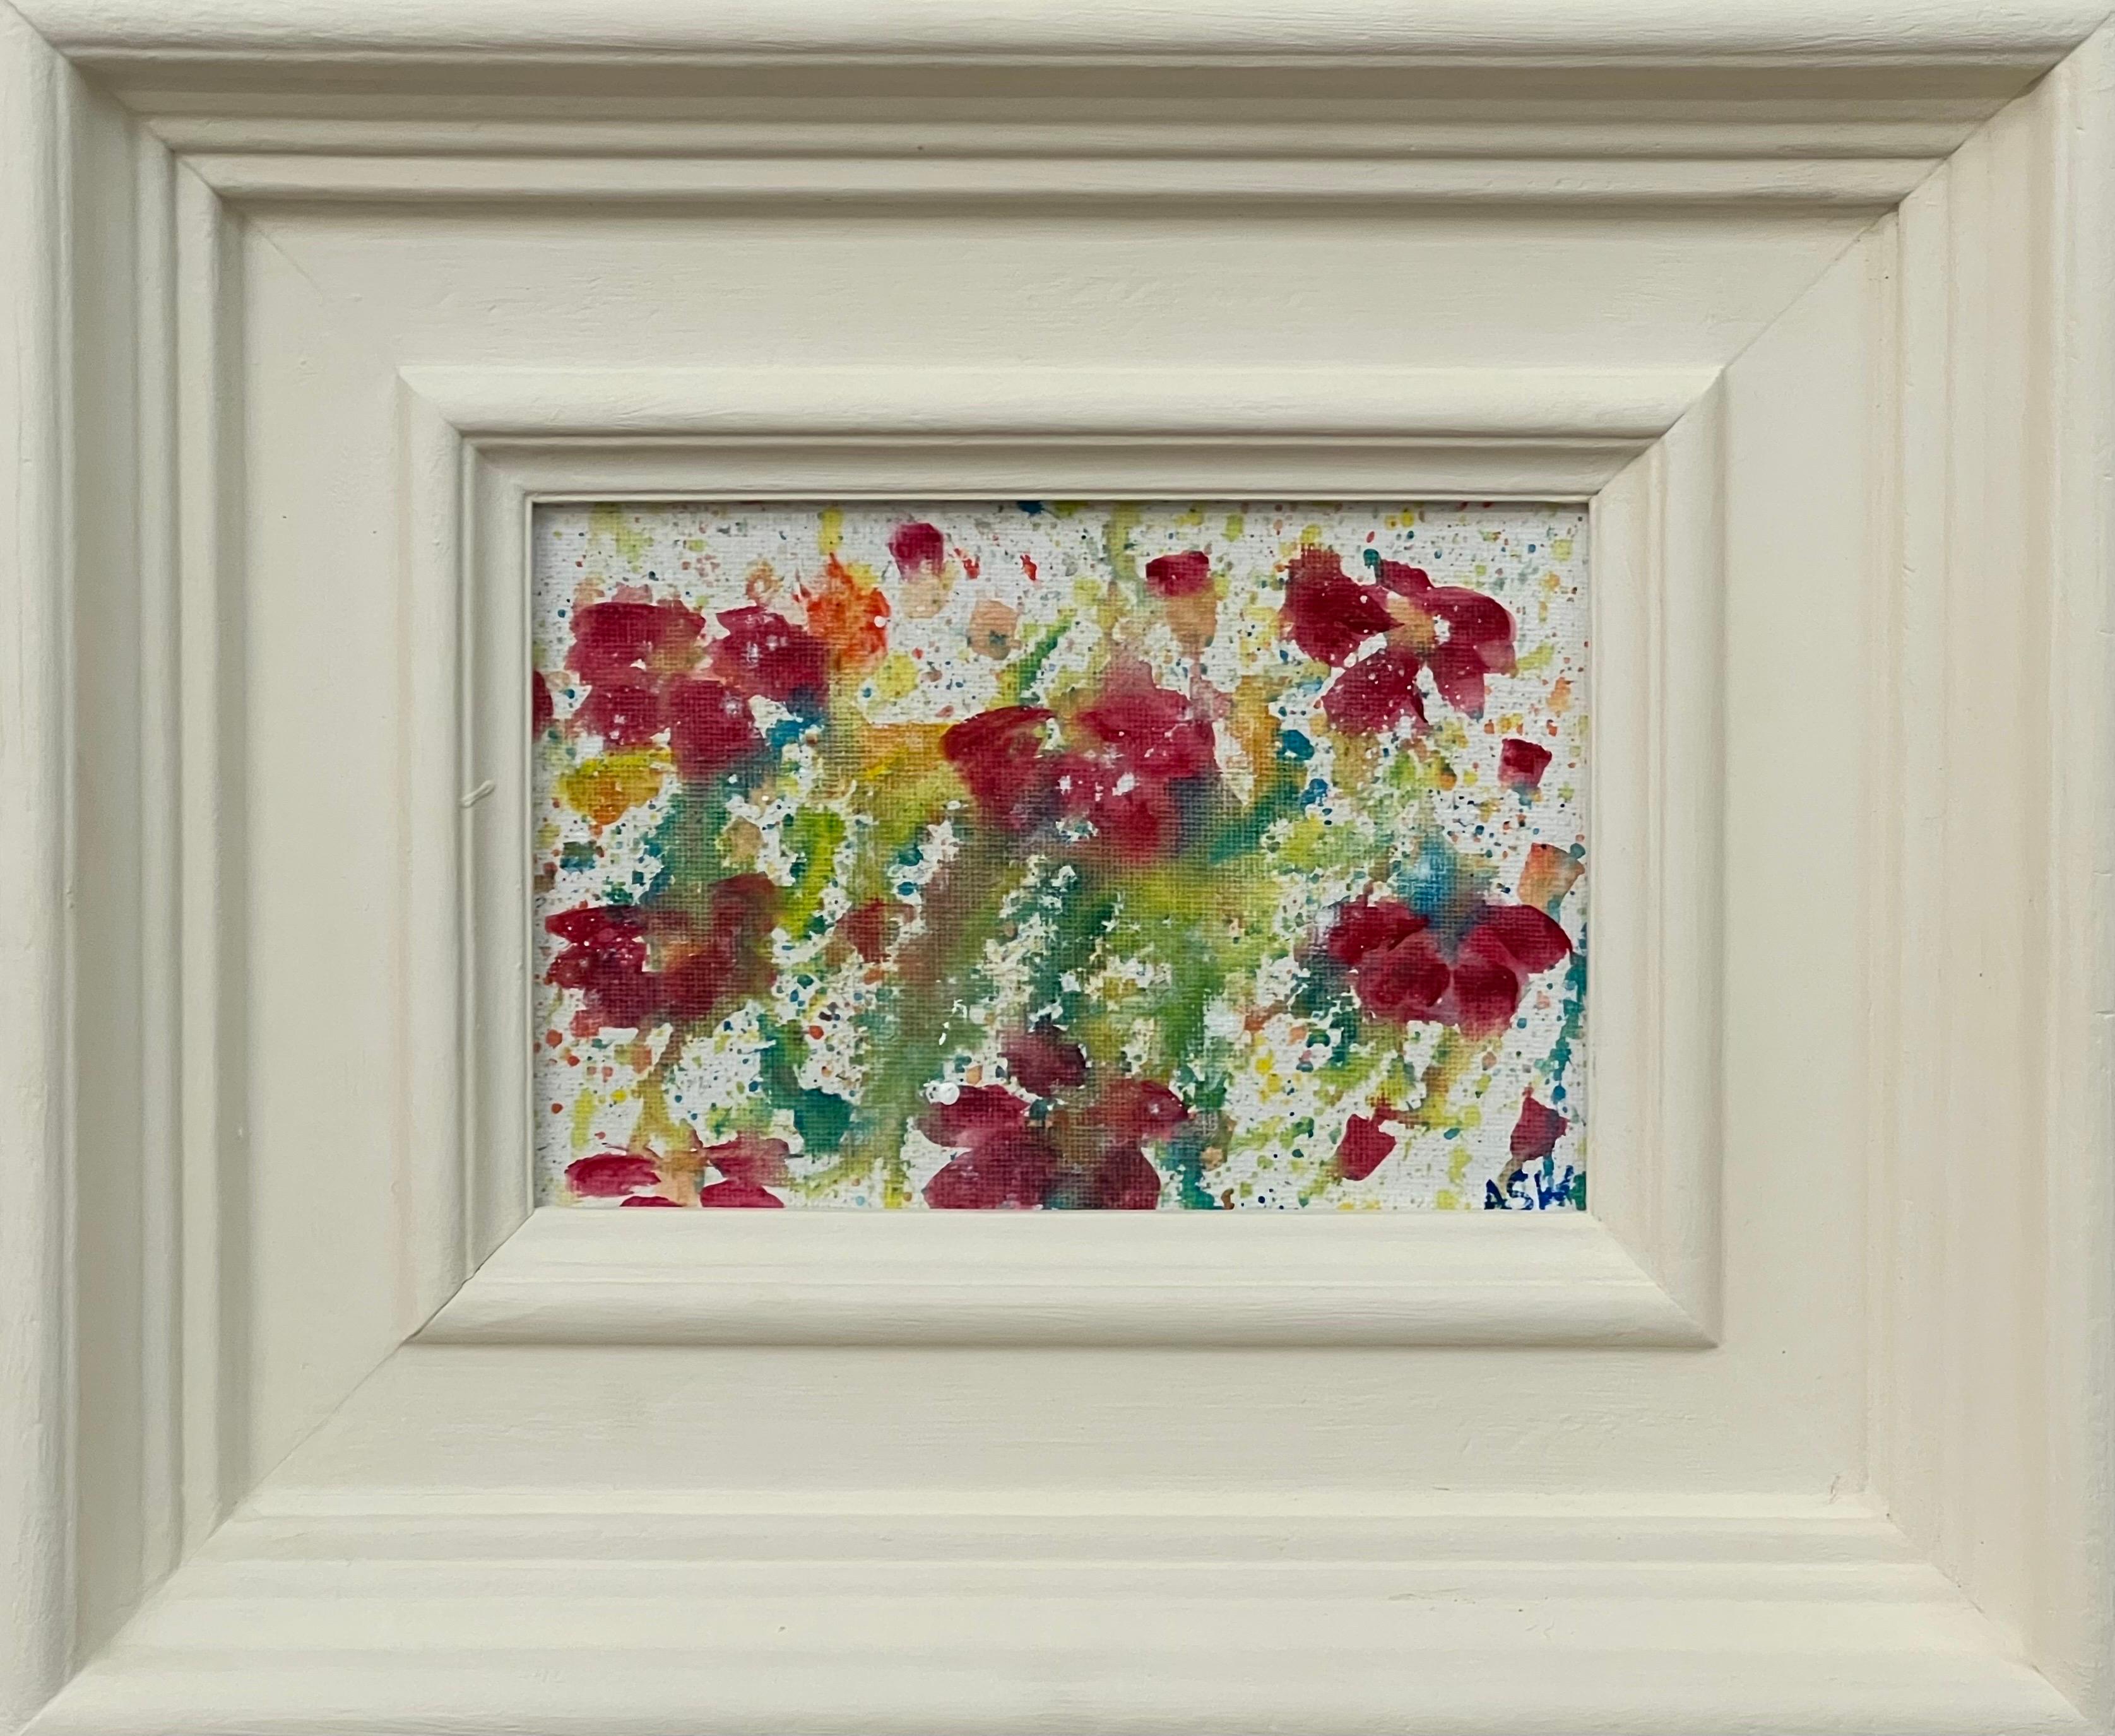 Abstract Painting Angela Wakefield - Étude de fleurs abstraites miniatures sur toile blanche d'un artiste britannique contemporain